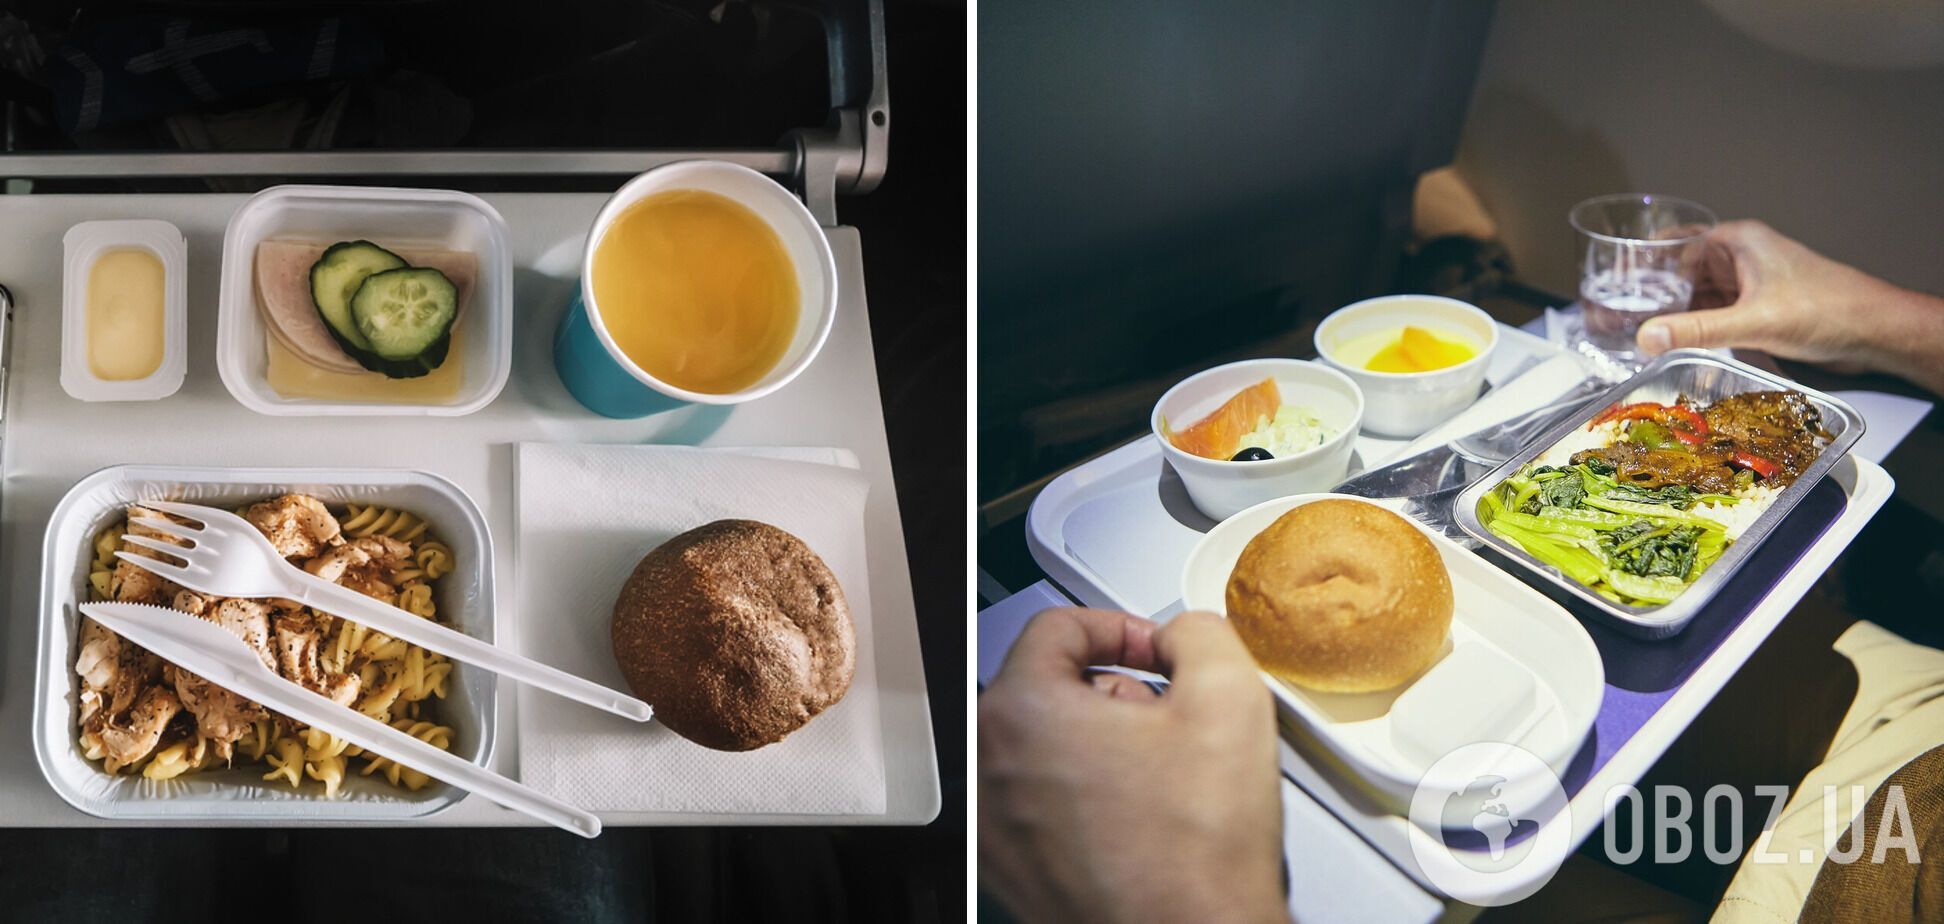 Стало известно, почему еда в самолете почти всегда невкусная: шеф-повар ни при чем